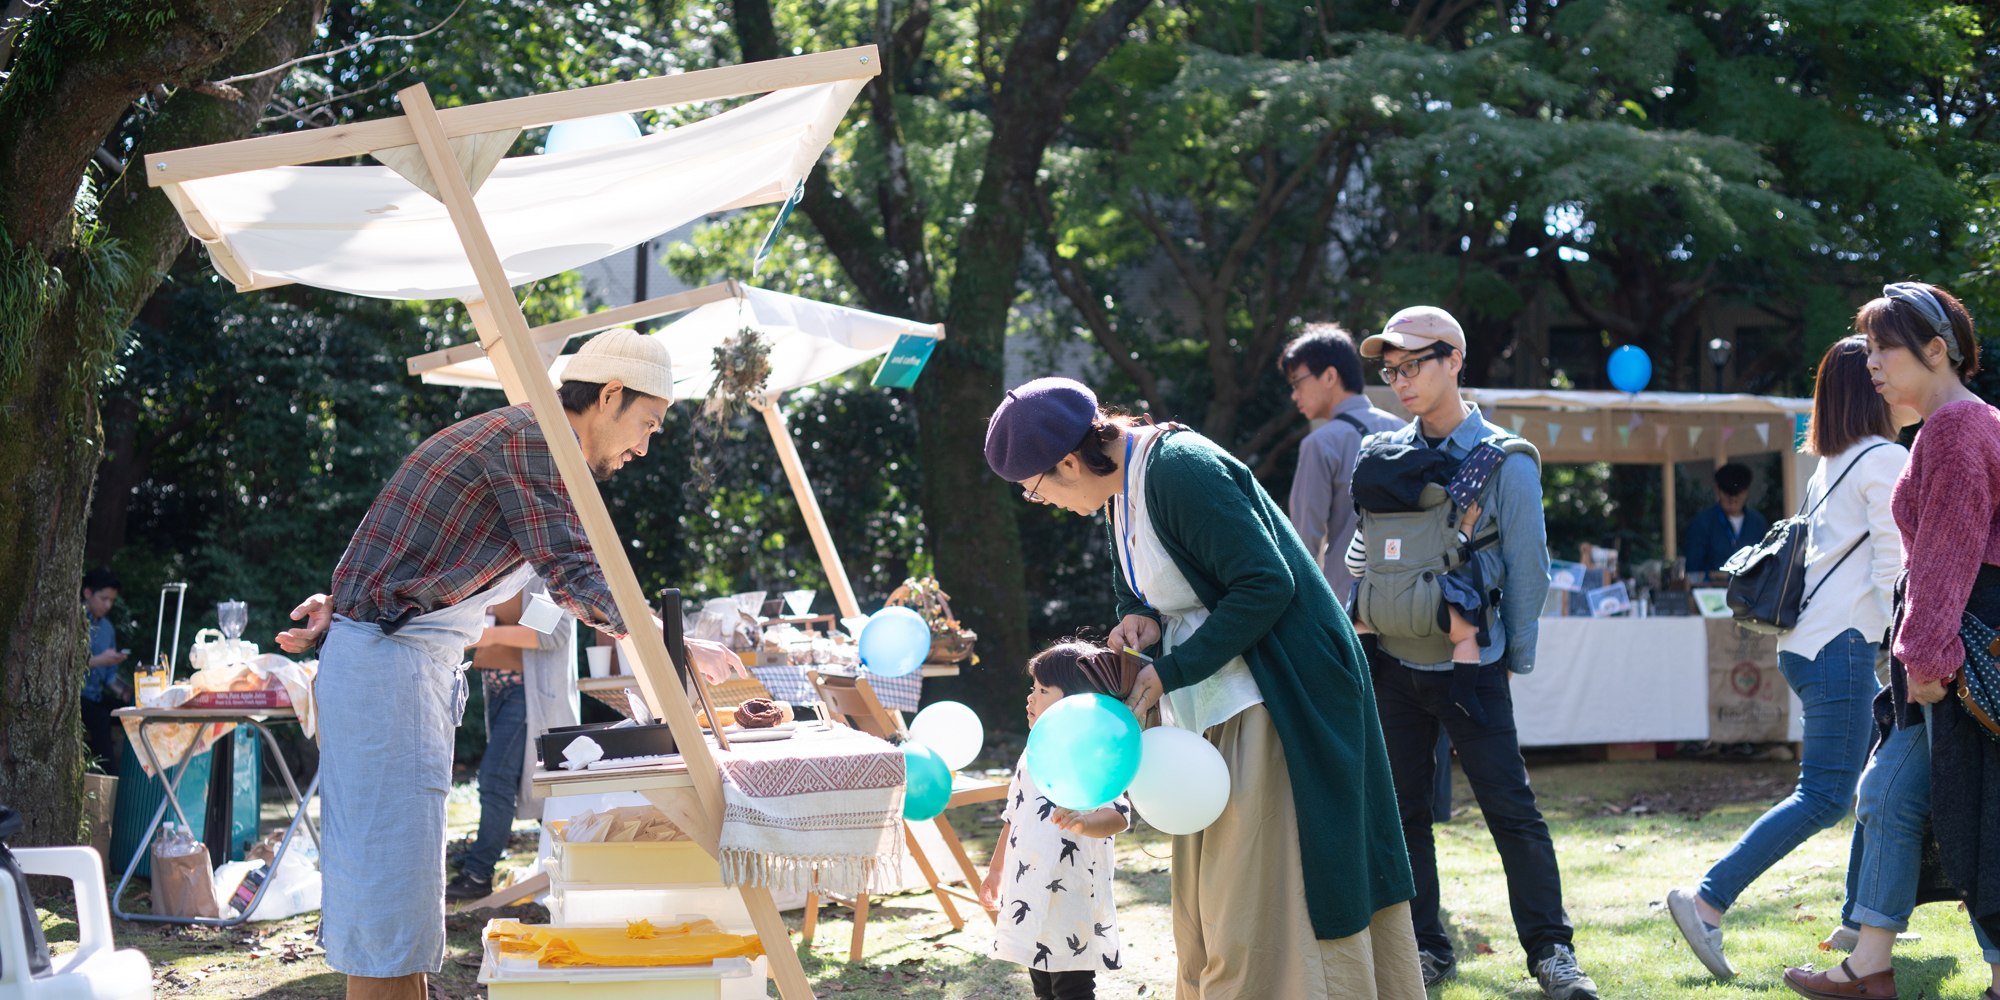 Matsudo International Science Art Festival: Outdoor Market